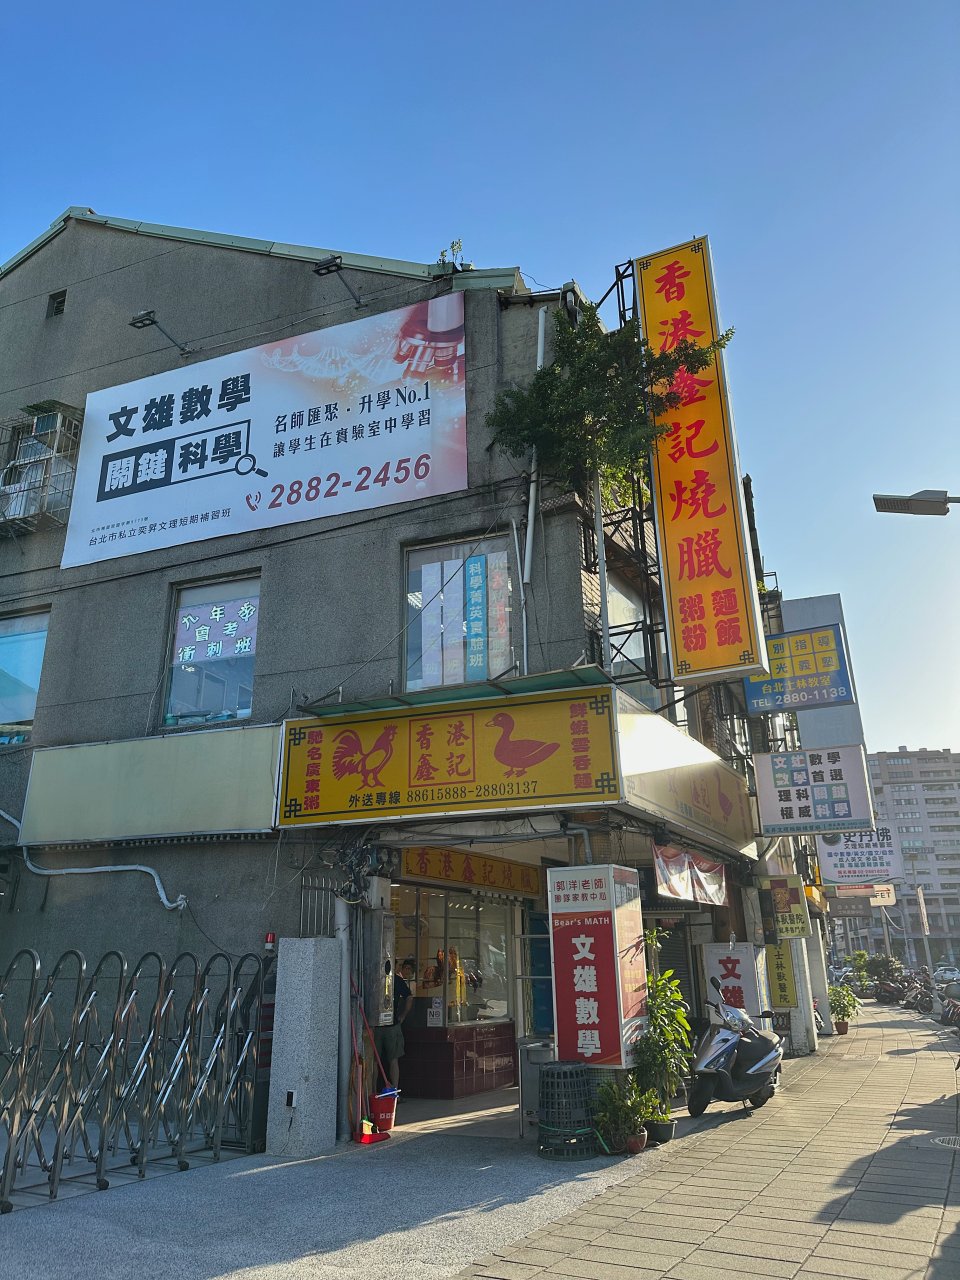 香港鑫記燒臘 士林捷運站20年燒臘便當店 廣式燒鴨肥嫩美味 免費燒鴨高湯無限喝